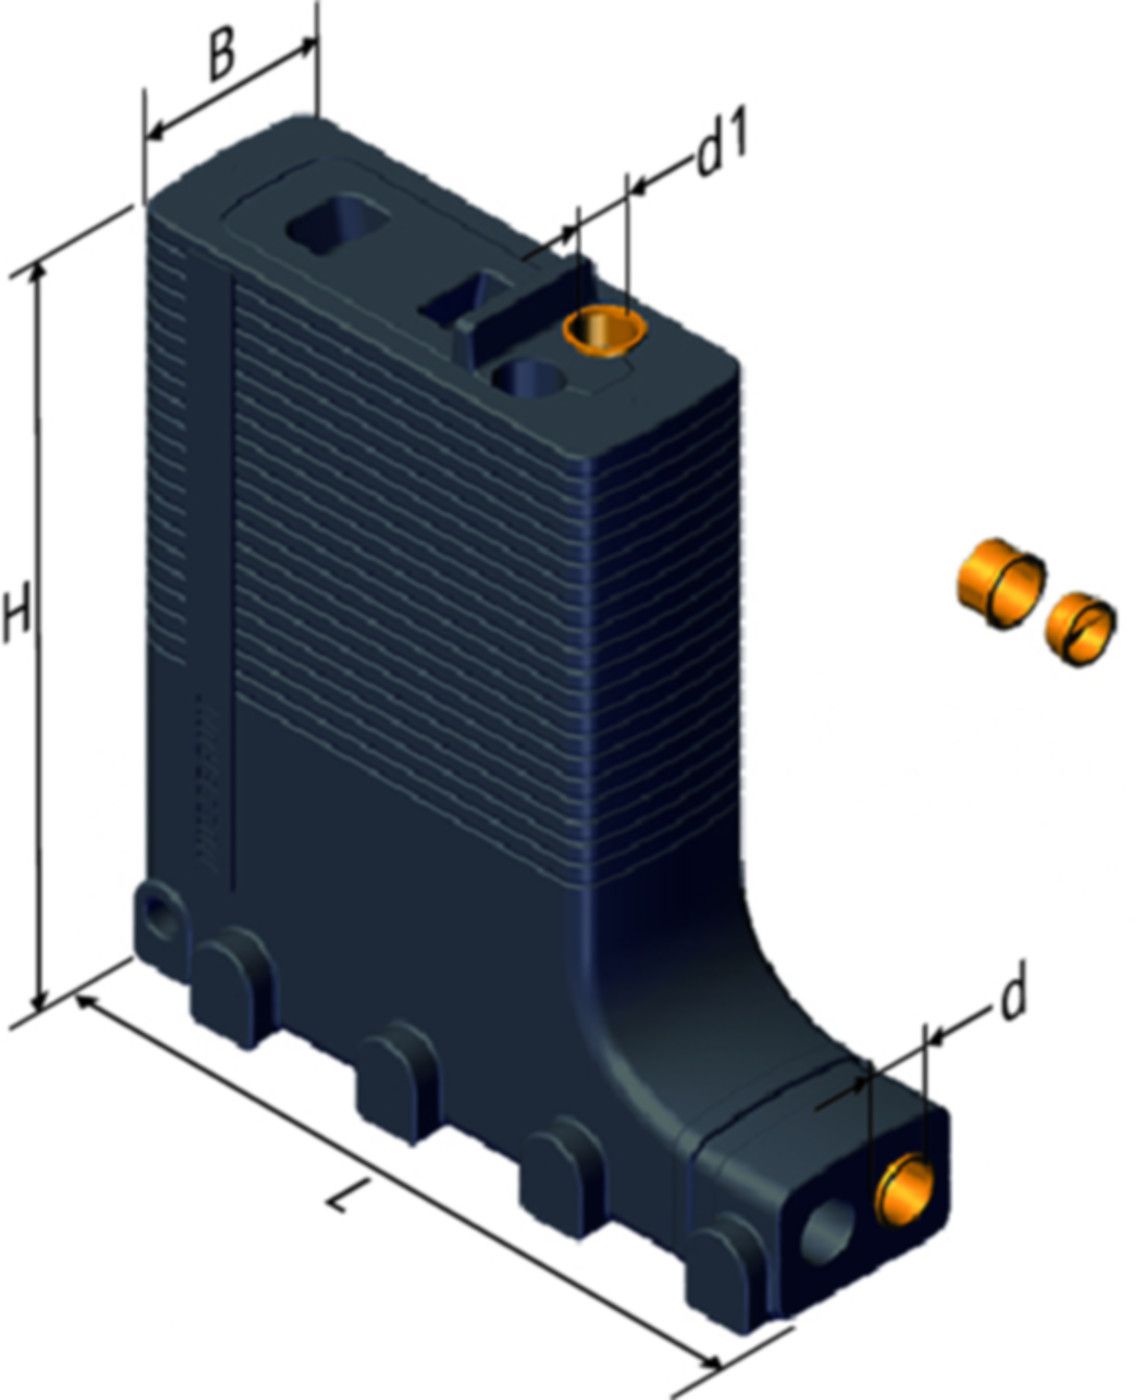 Optiflex-Einlegehilfe 16/20mm 87074.21 gegen oben, Deckenstärke 200-350mm - Nussbaum Armaturen Nettoartikel